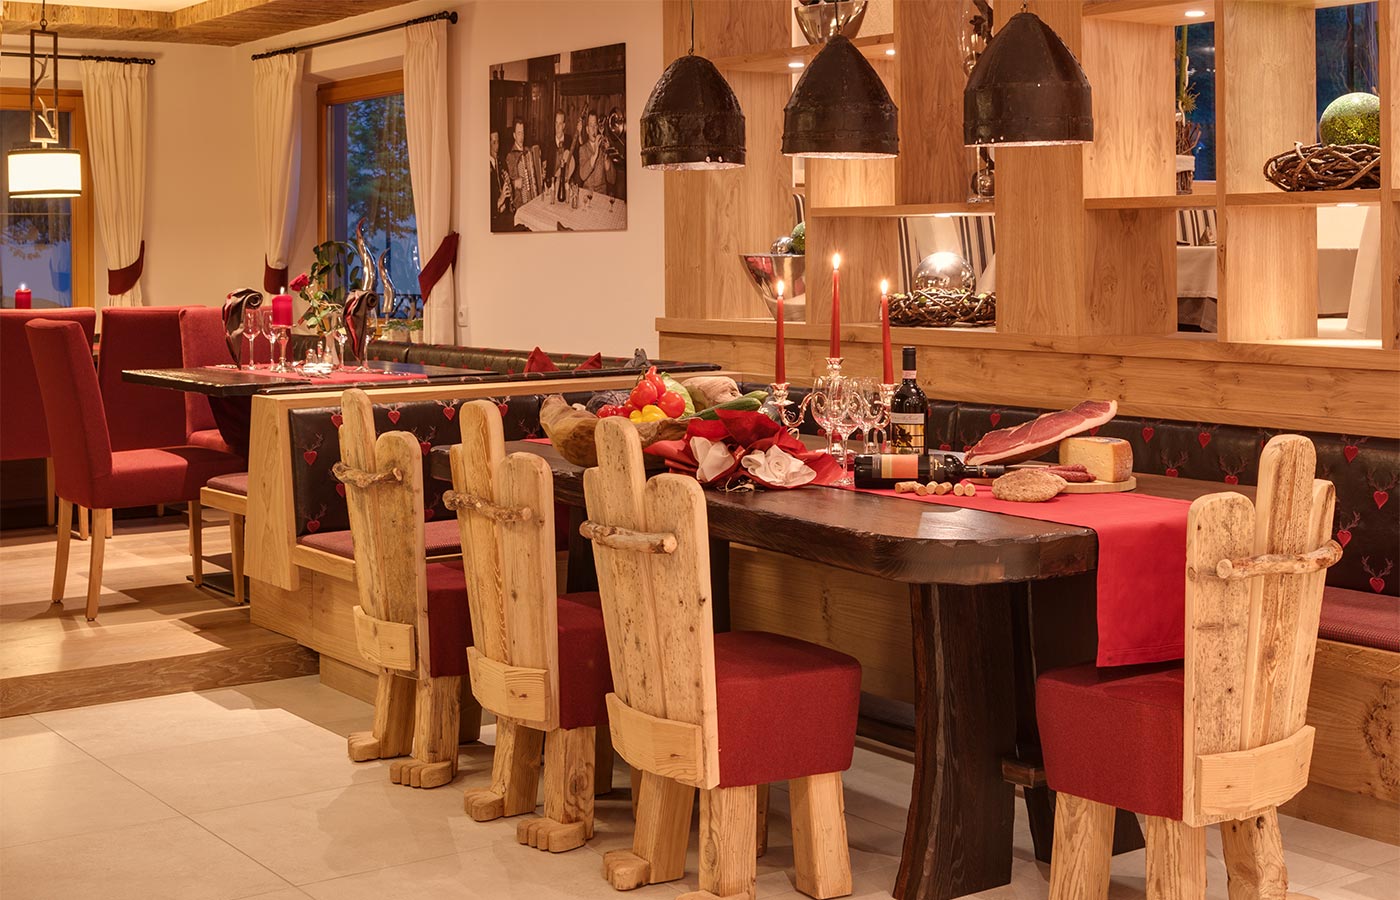 Großer gedeckter Tisch aus dunklem Holz mit rotem eleganten Läufer, Kerzen und kalter Platte